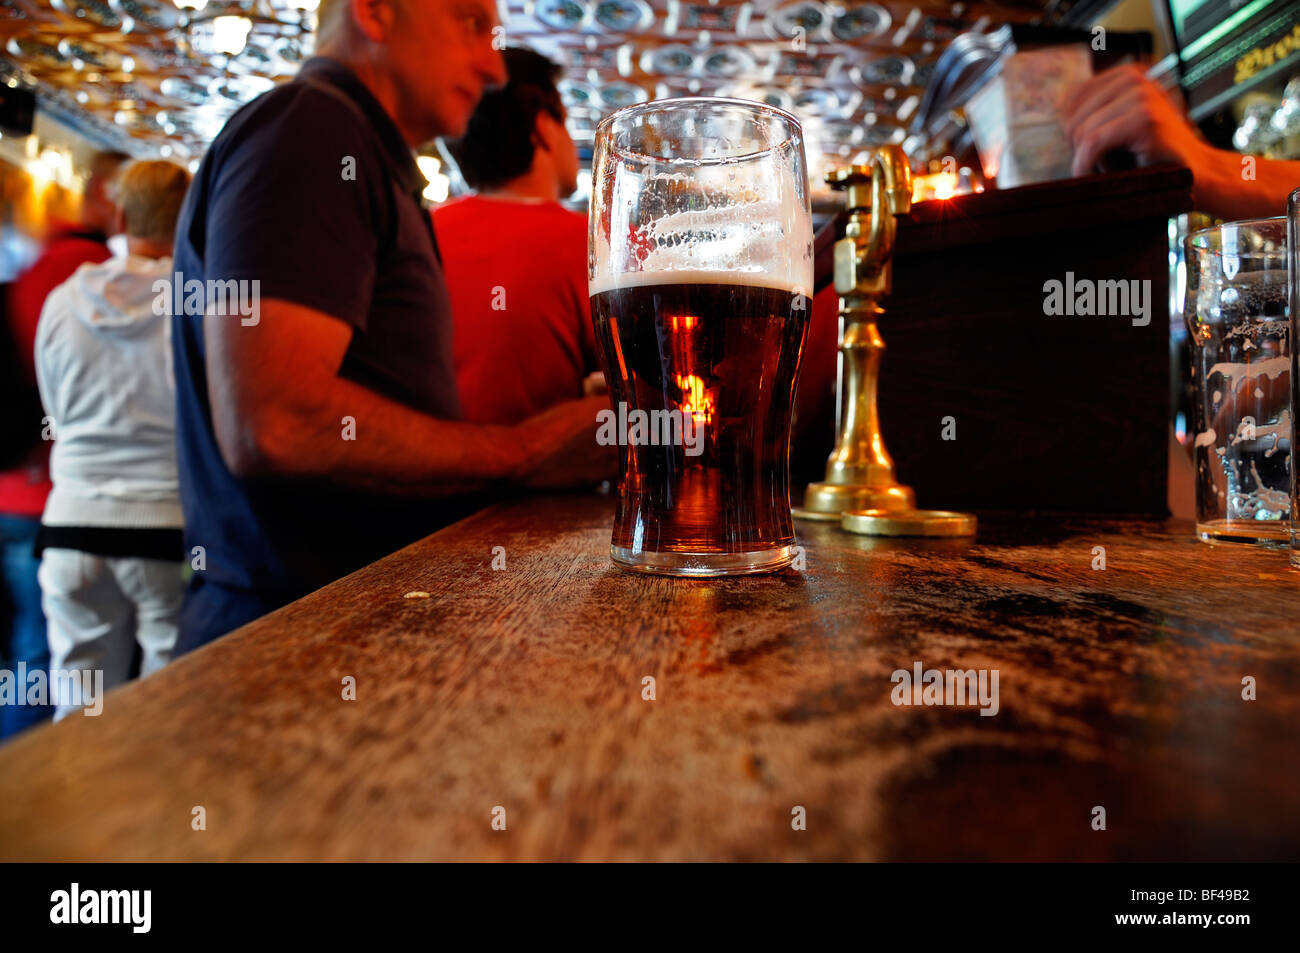 halb leer voll Pint Bier auf eine Bar Pub lizenziert Räumlichkeiten Galway Irland Stockfoto